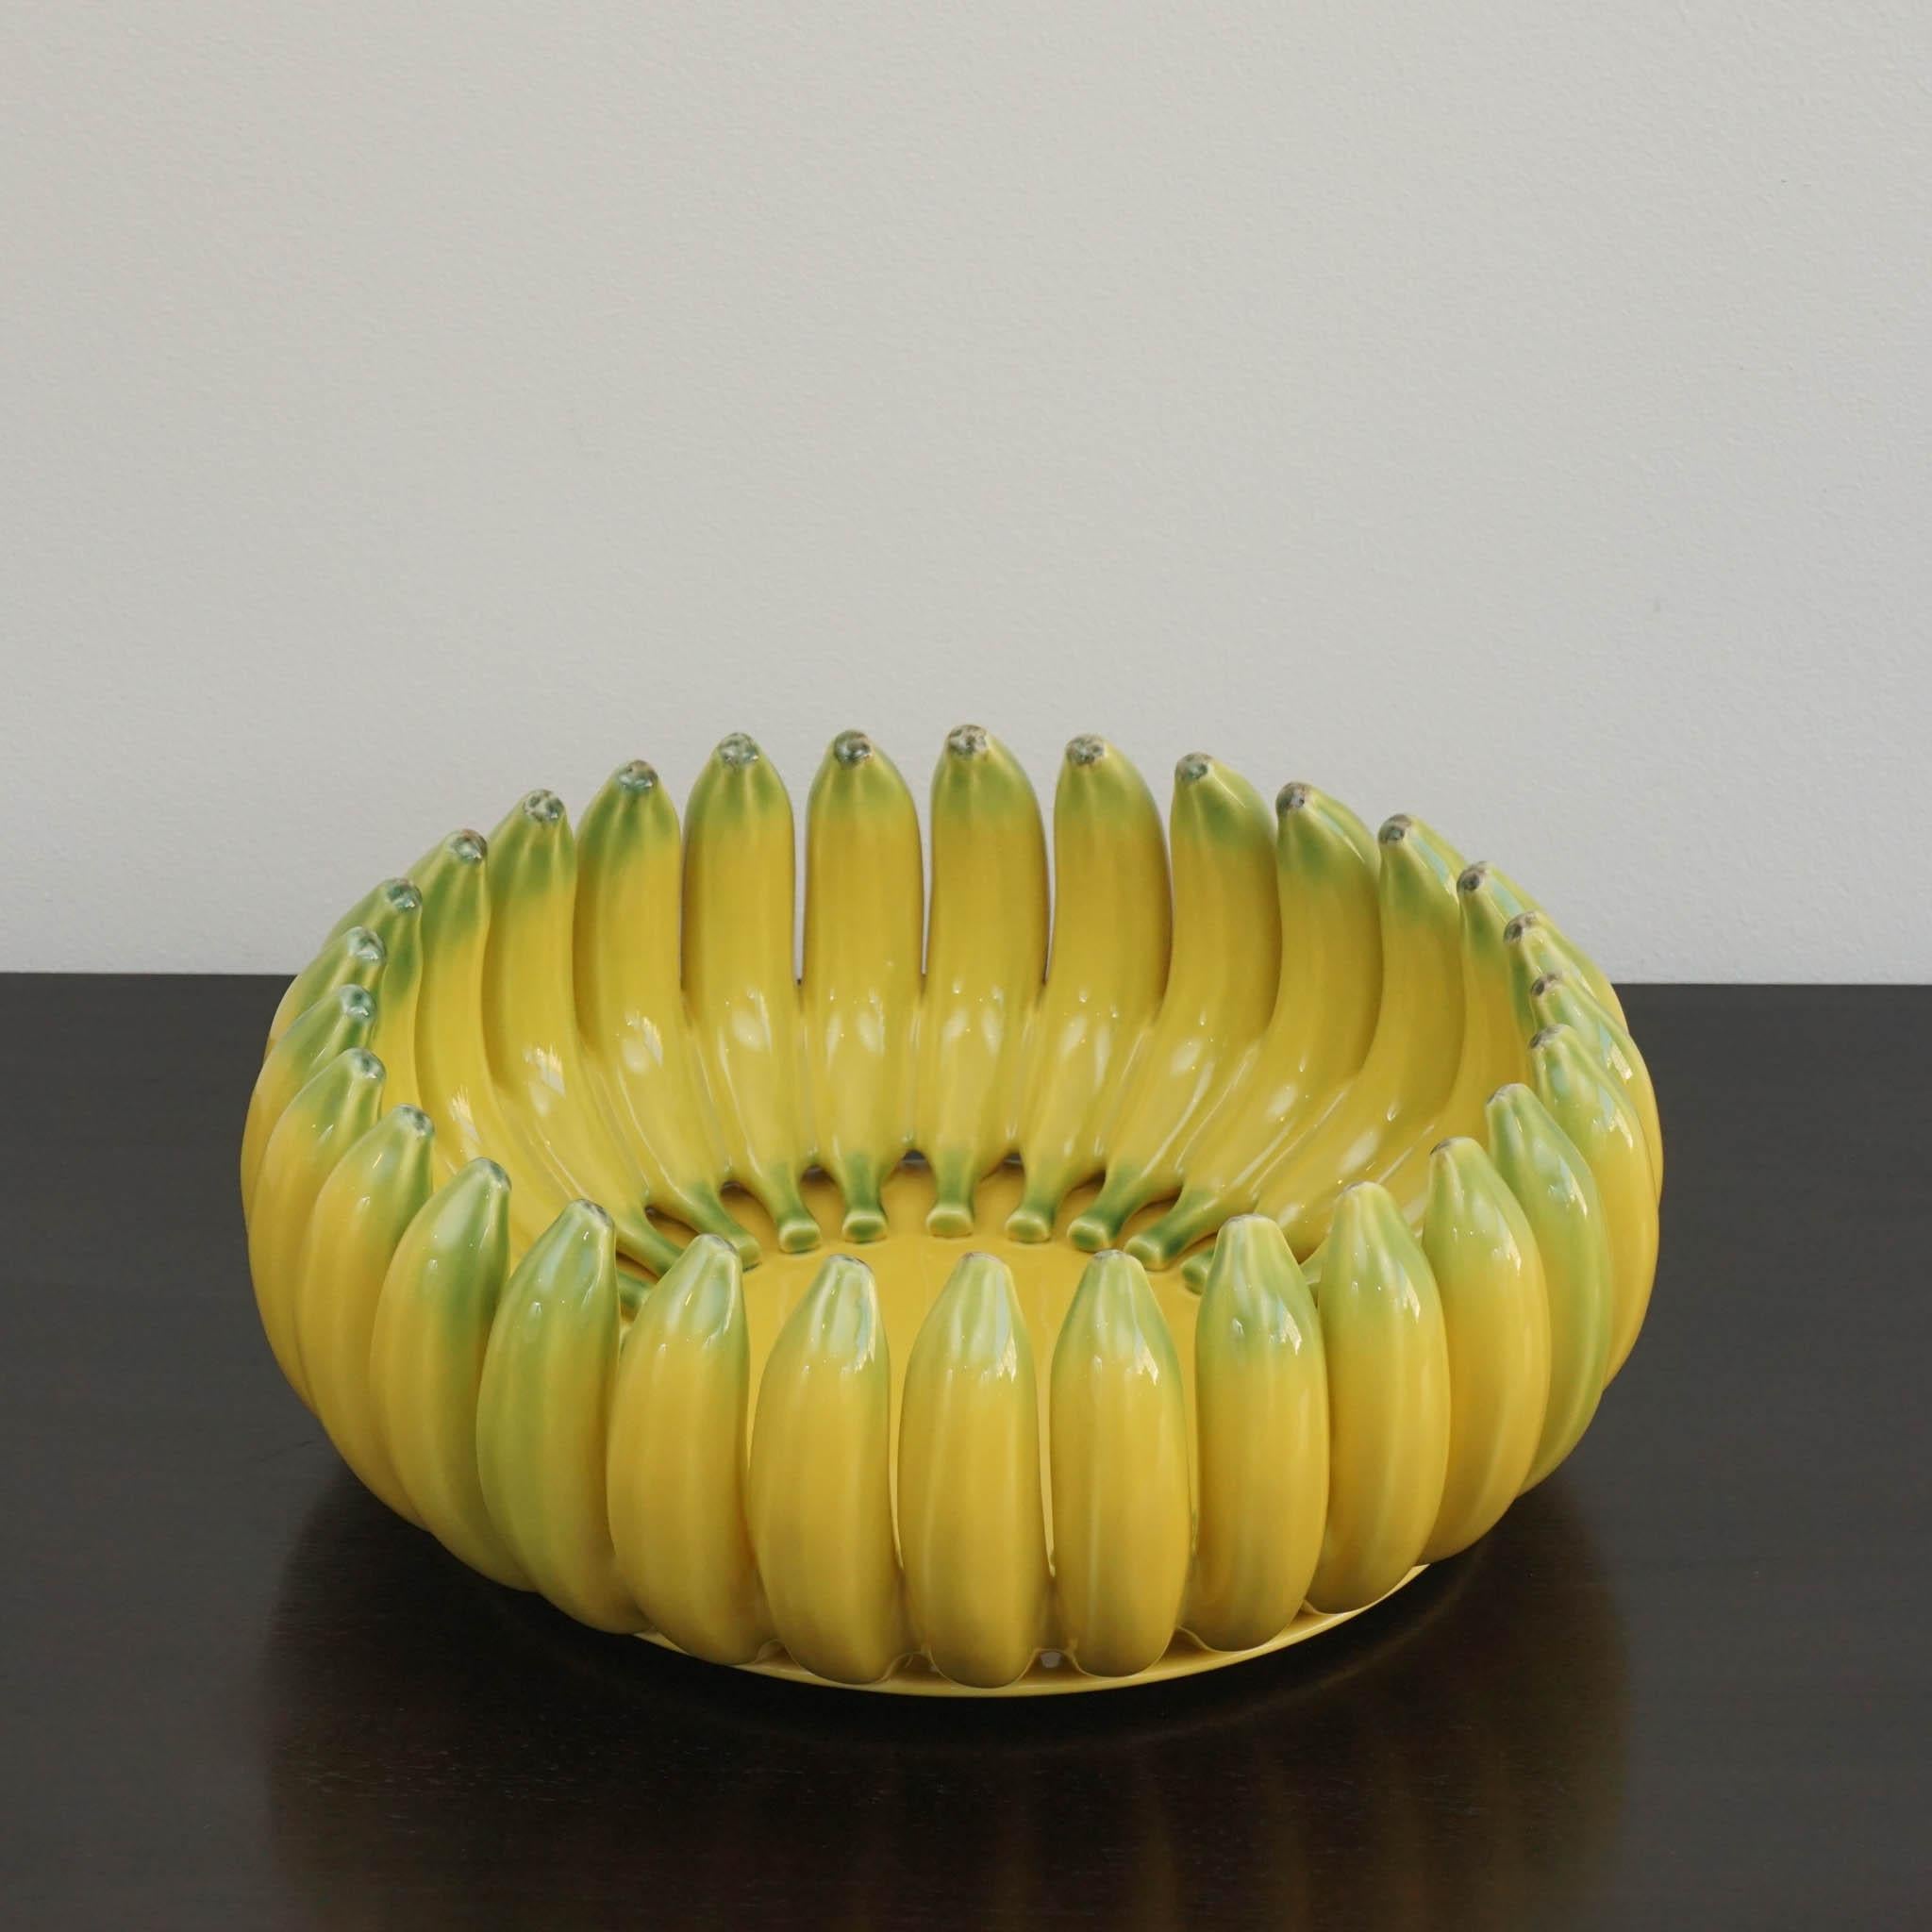 Decken Sie Ihren Tisch im tropischen Stil mit diesem bananenverzierten Tafelaufsatz von Bordallo Pinheiro. Dieser Tafelaufsatz aus Steingut zeigt ein Bananendesign. Er verleiht Ihrem Tisch eine einzigartige Note und eignet sich ideal zur